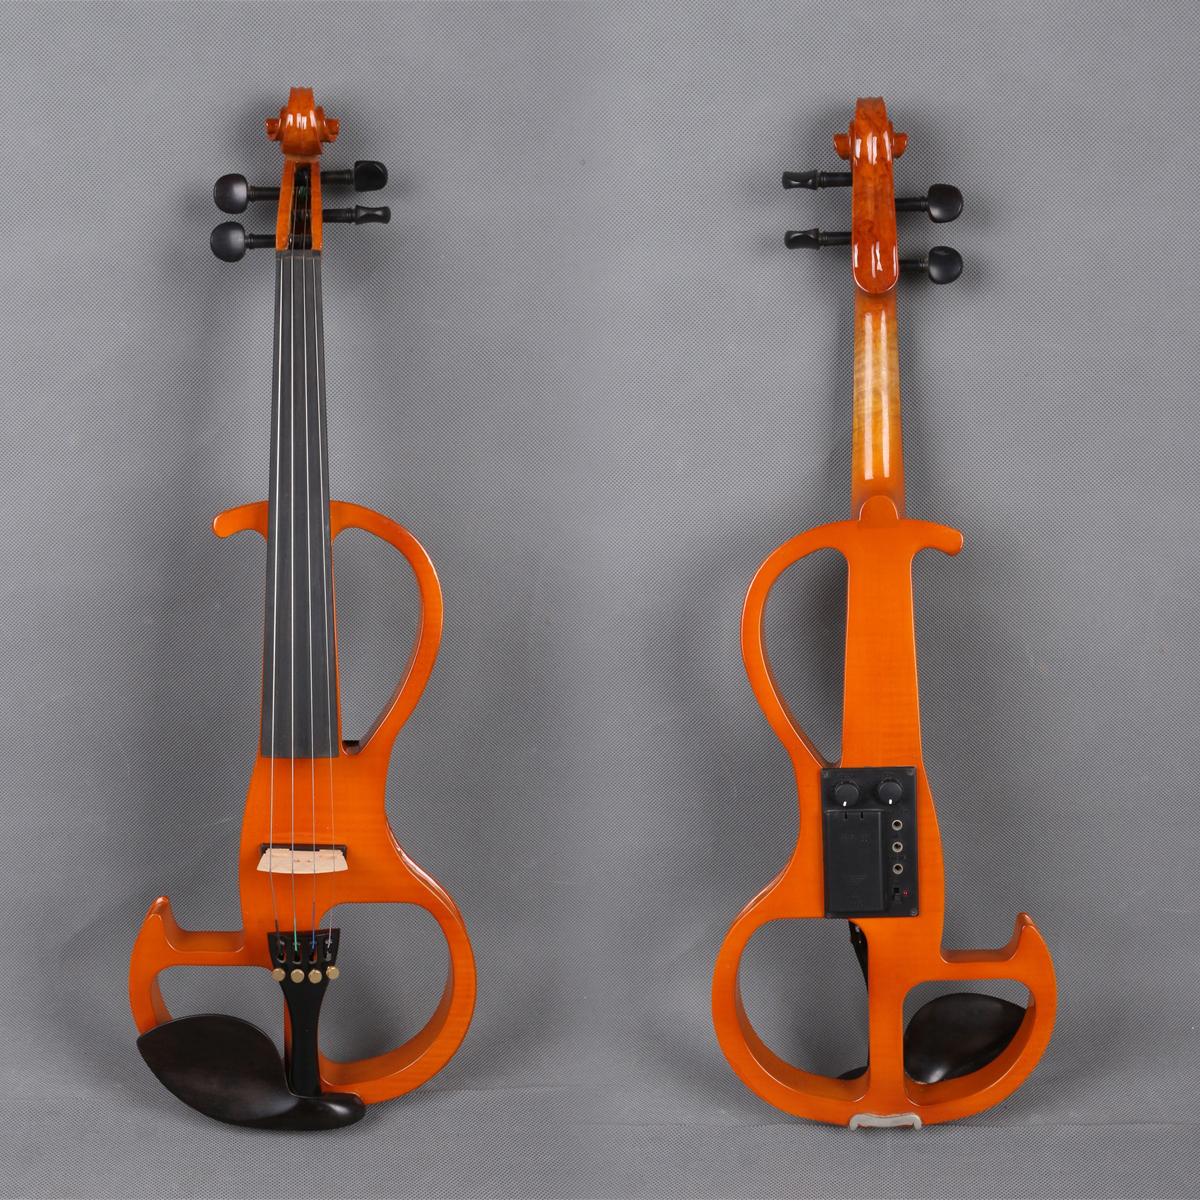 Yinfente Electric Violin. Электроскрипка фон. Yinfente 5 струн электрический Тихая виолончель. Альт Эл. Electric violin